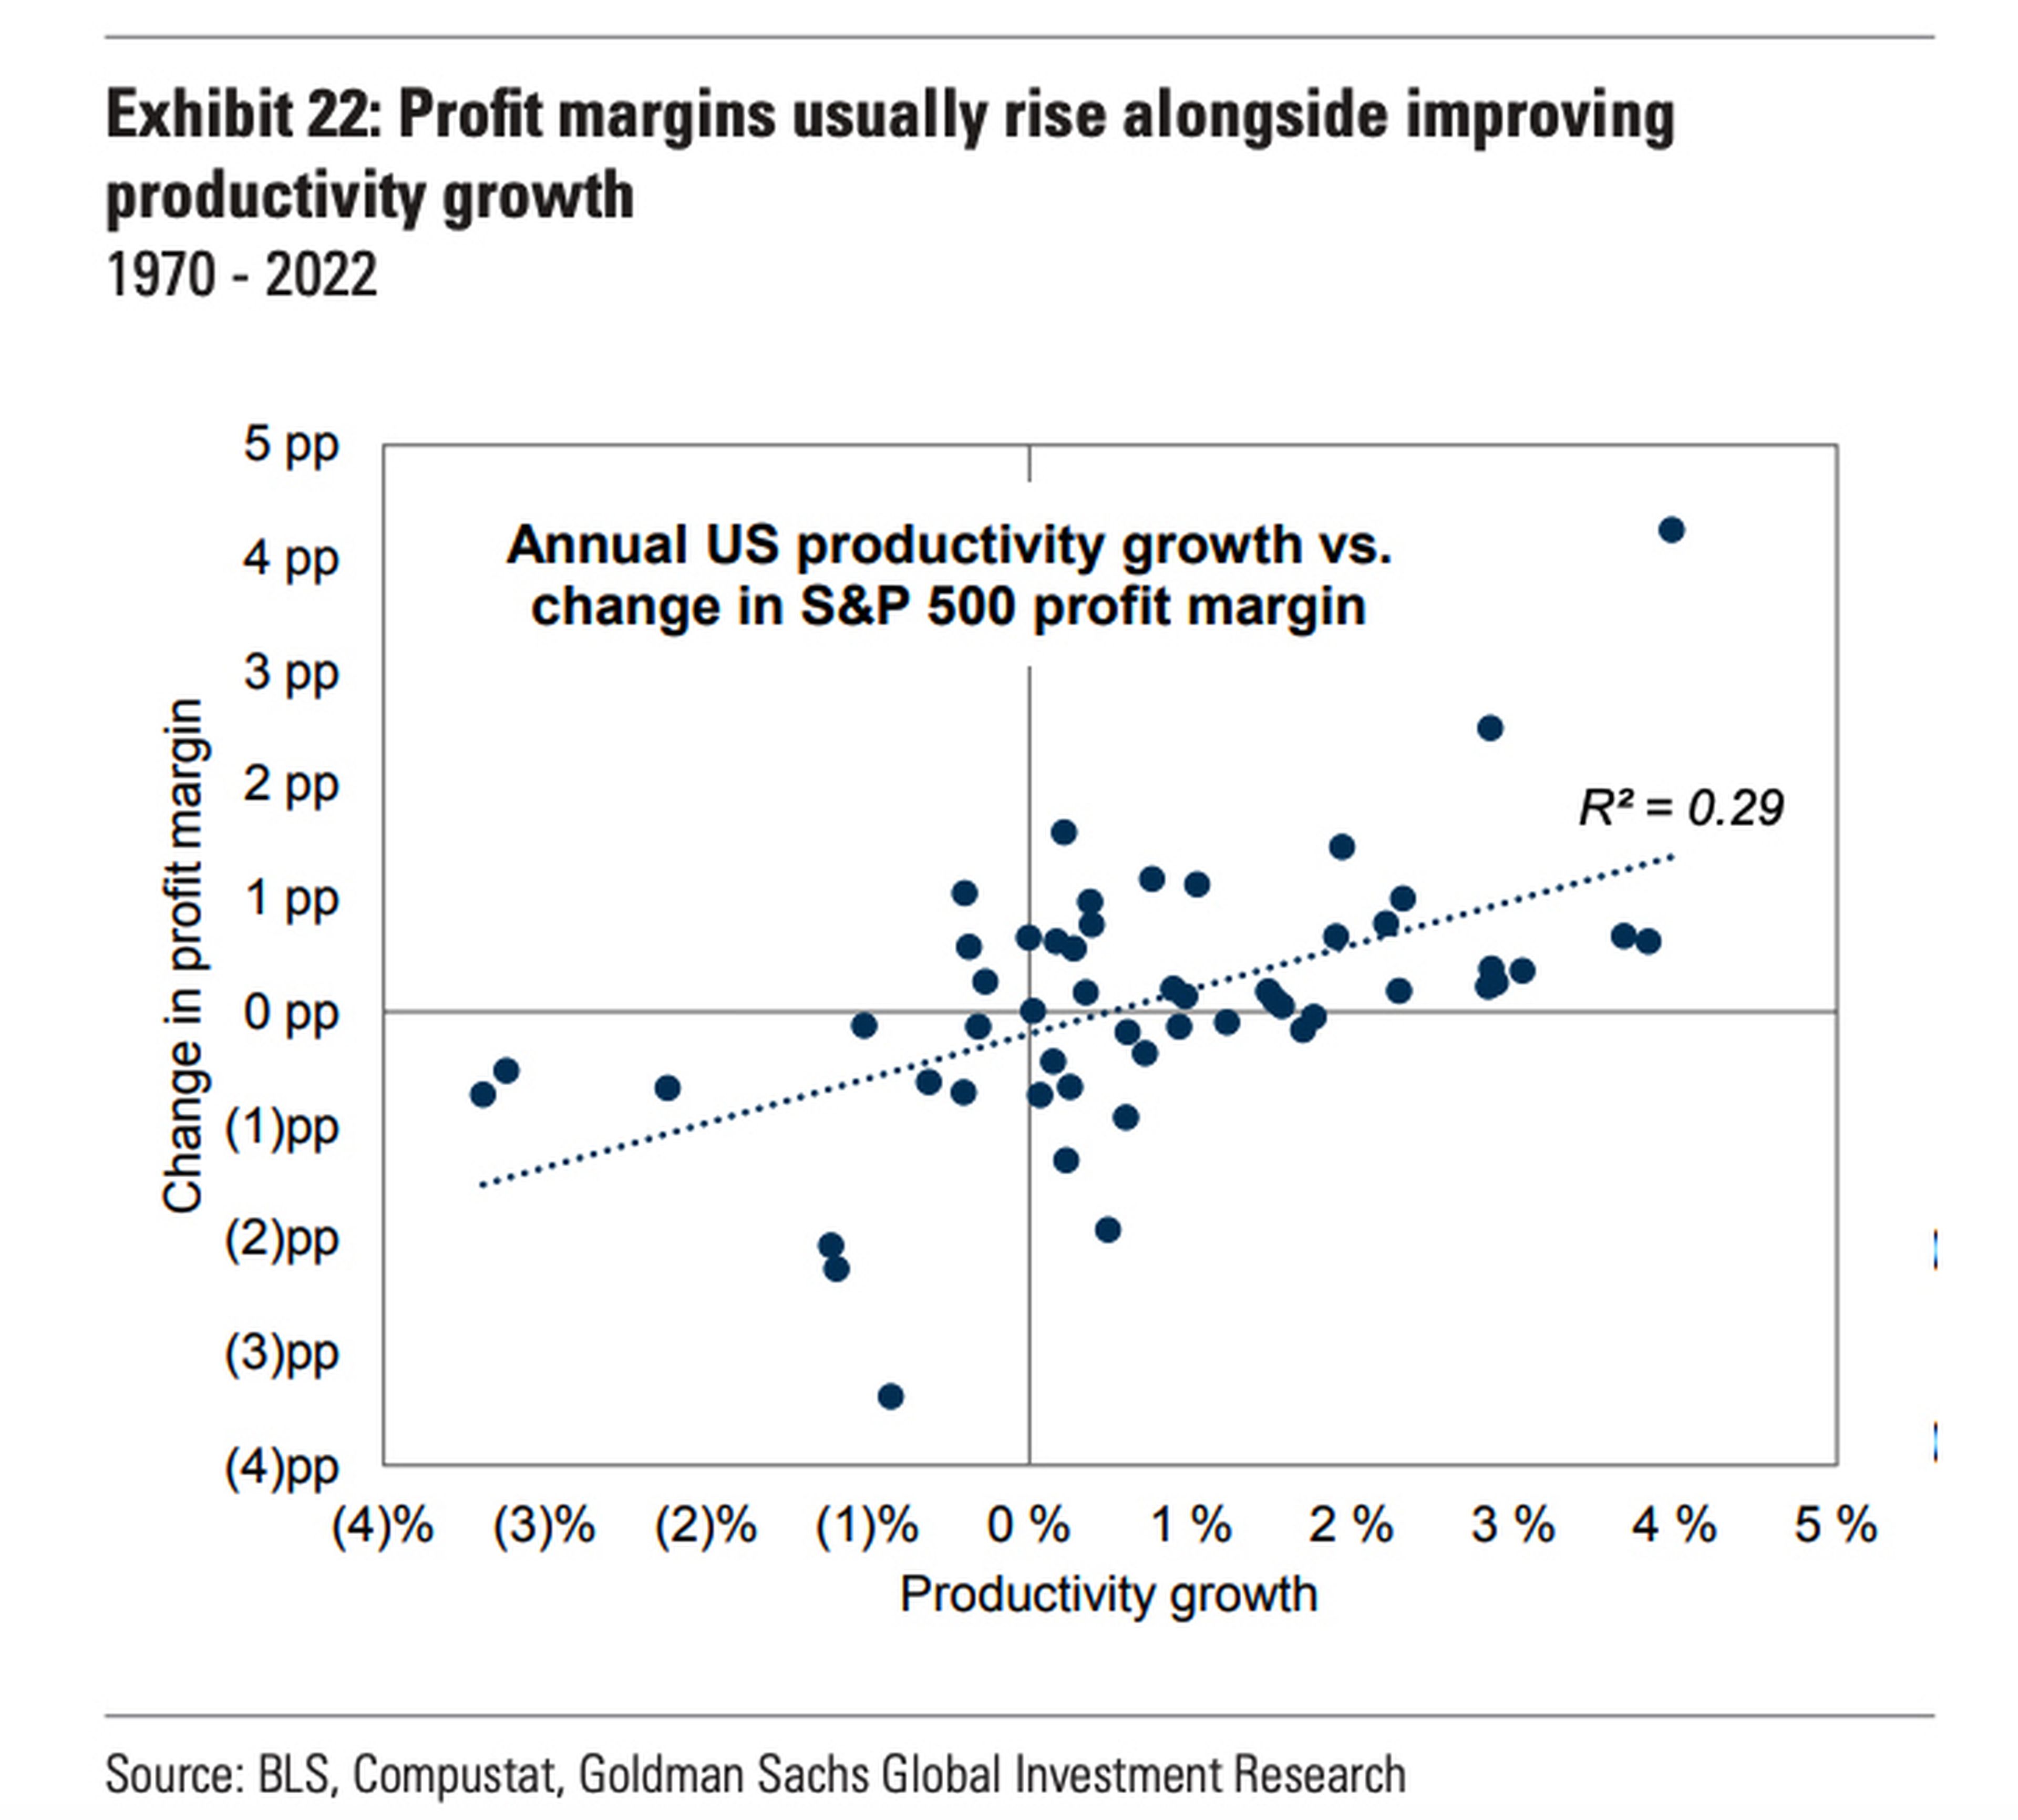 US annual productivity growth versus S&P 500 profit margin change.